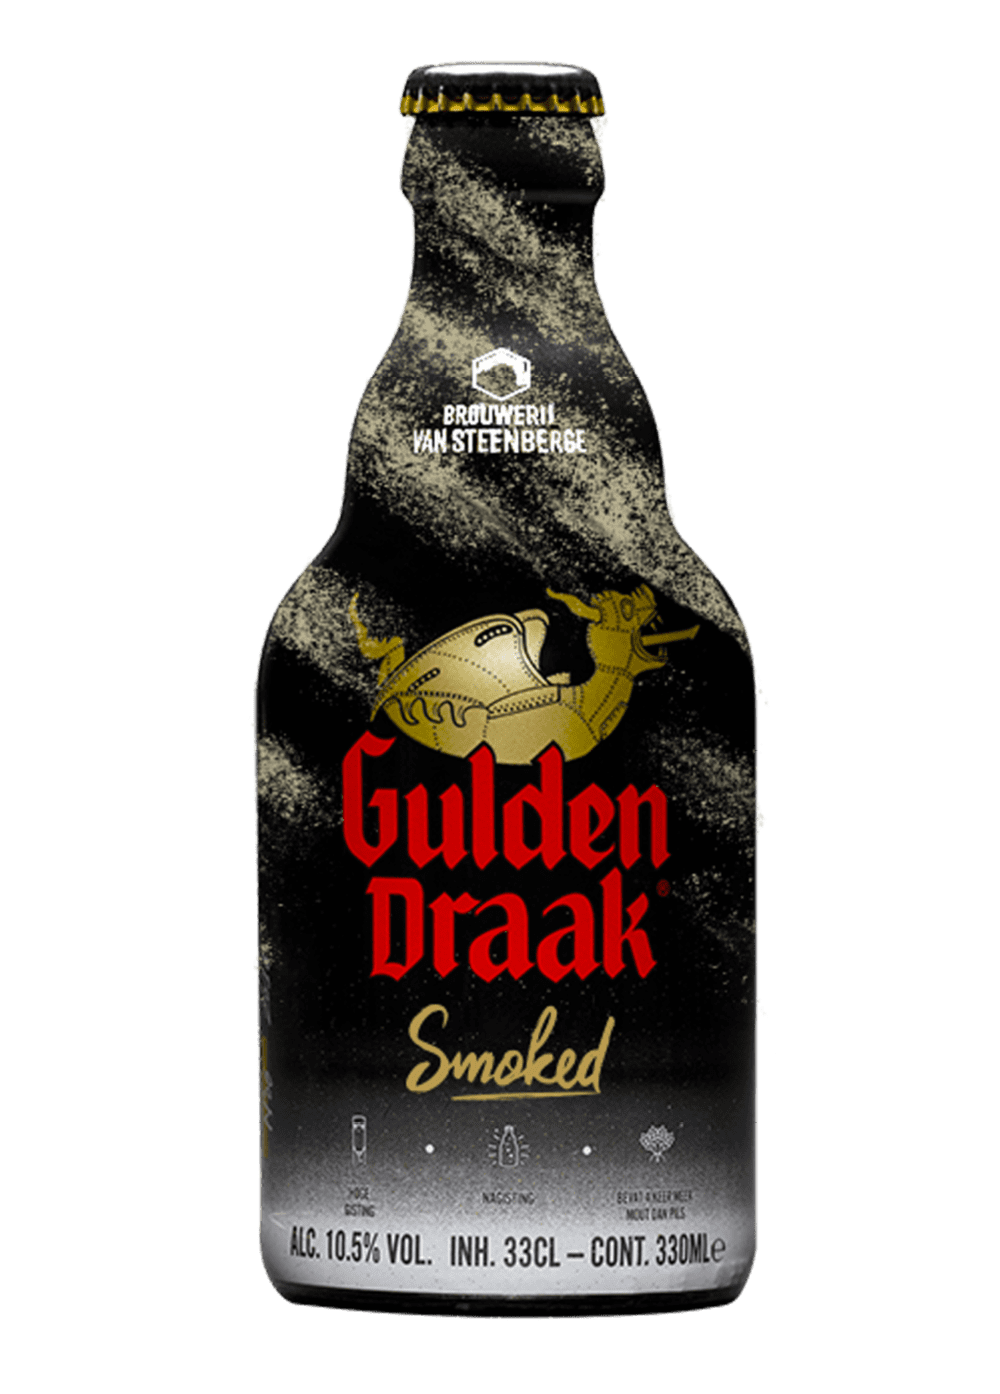 Cerveza tipo smoked de la marca Gulden Draak